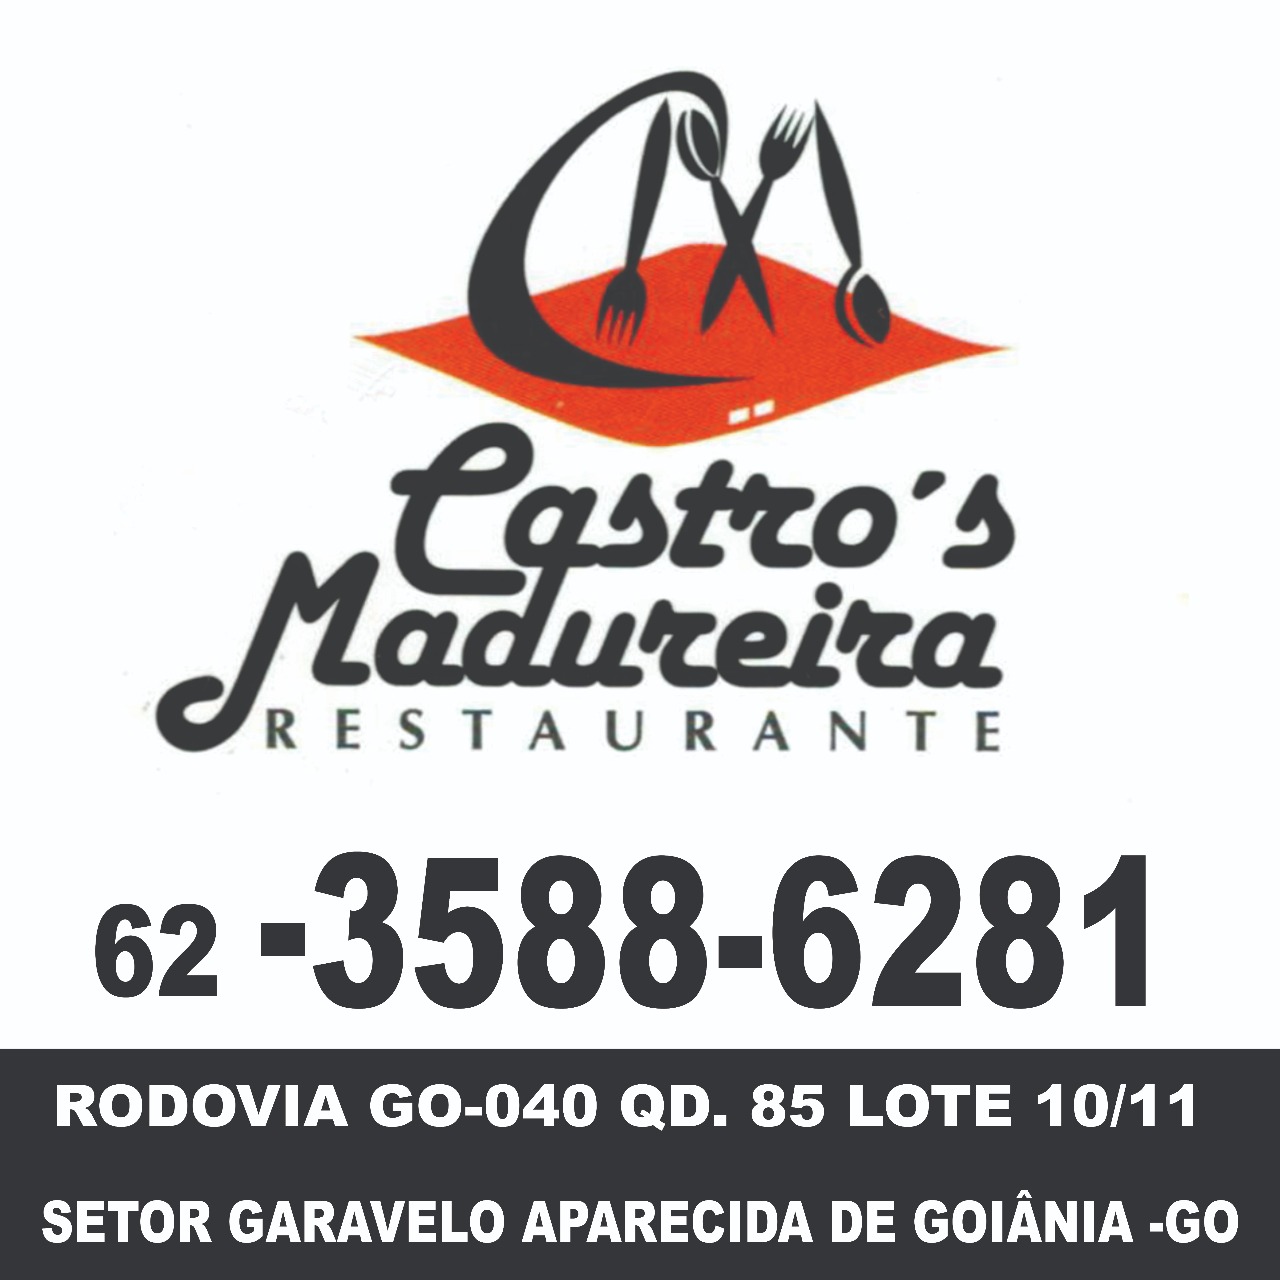 CASTRO MADUREIRA RESTAURANTES-3588-6281